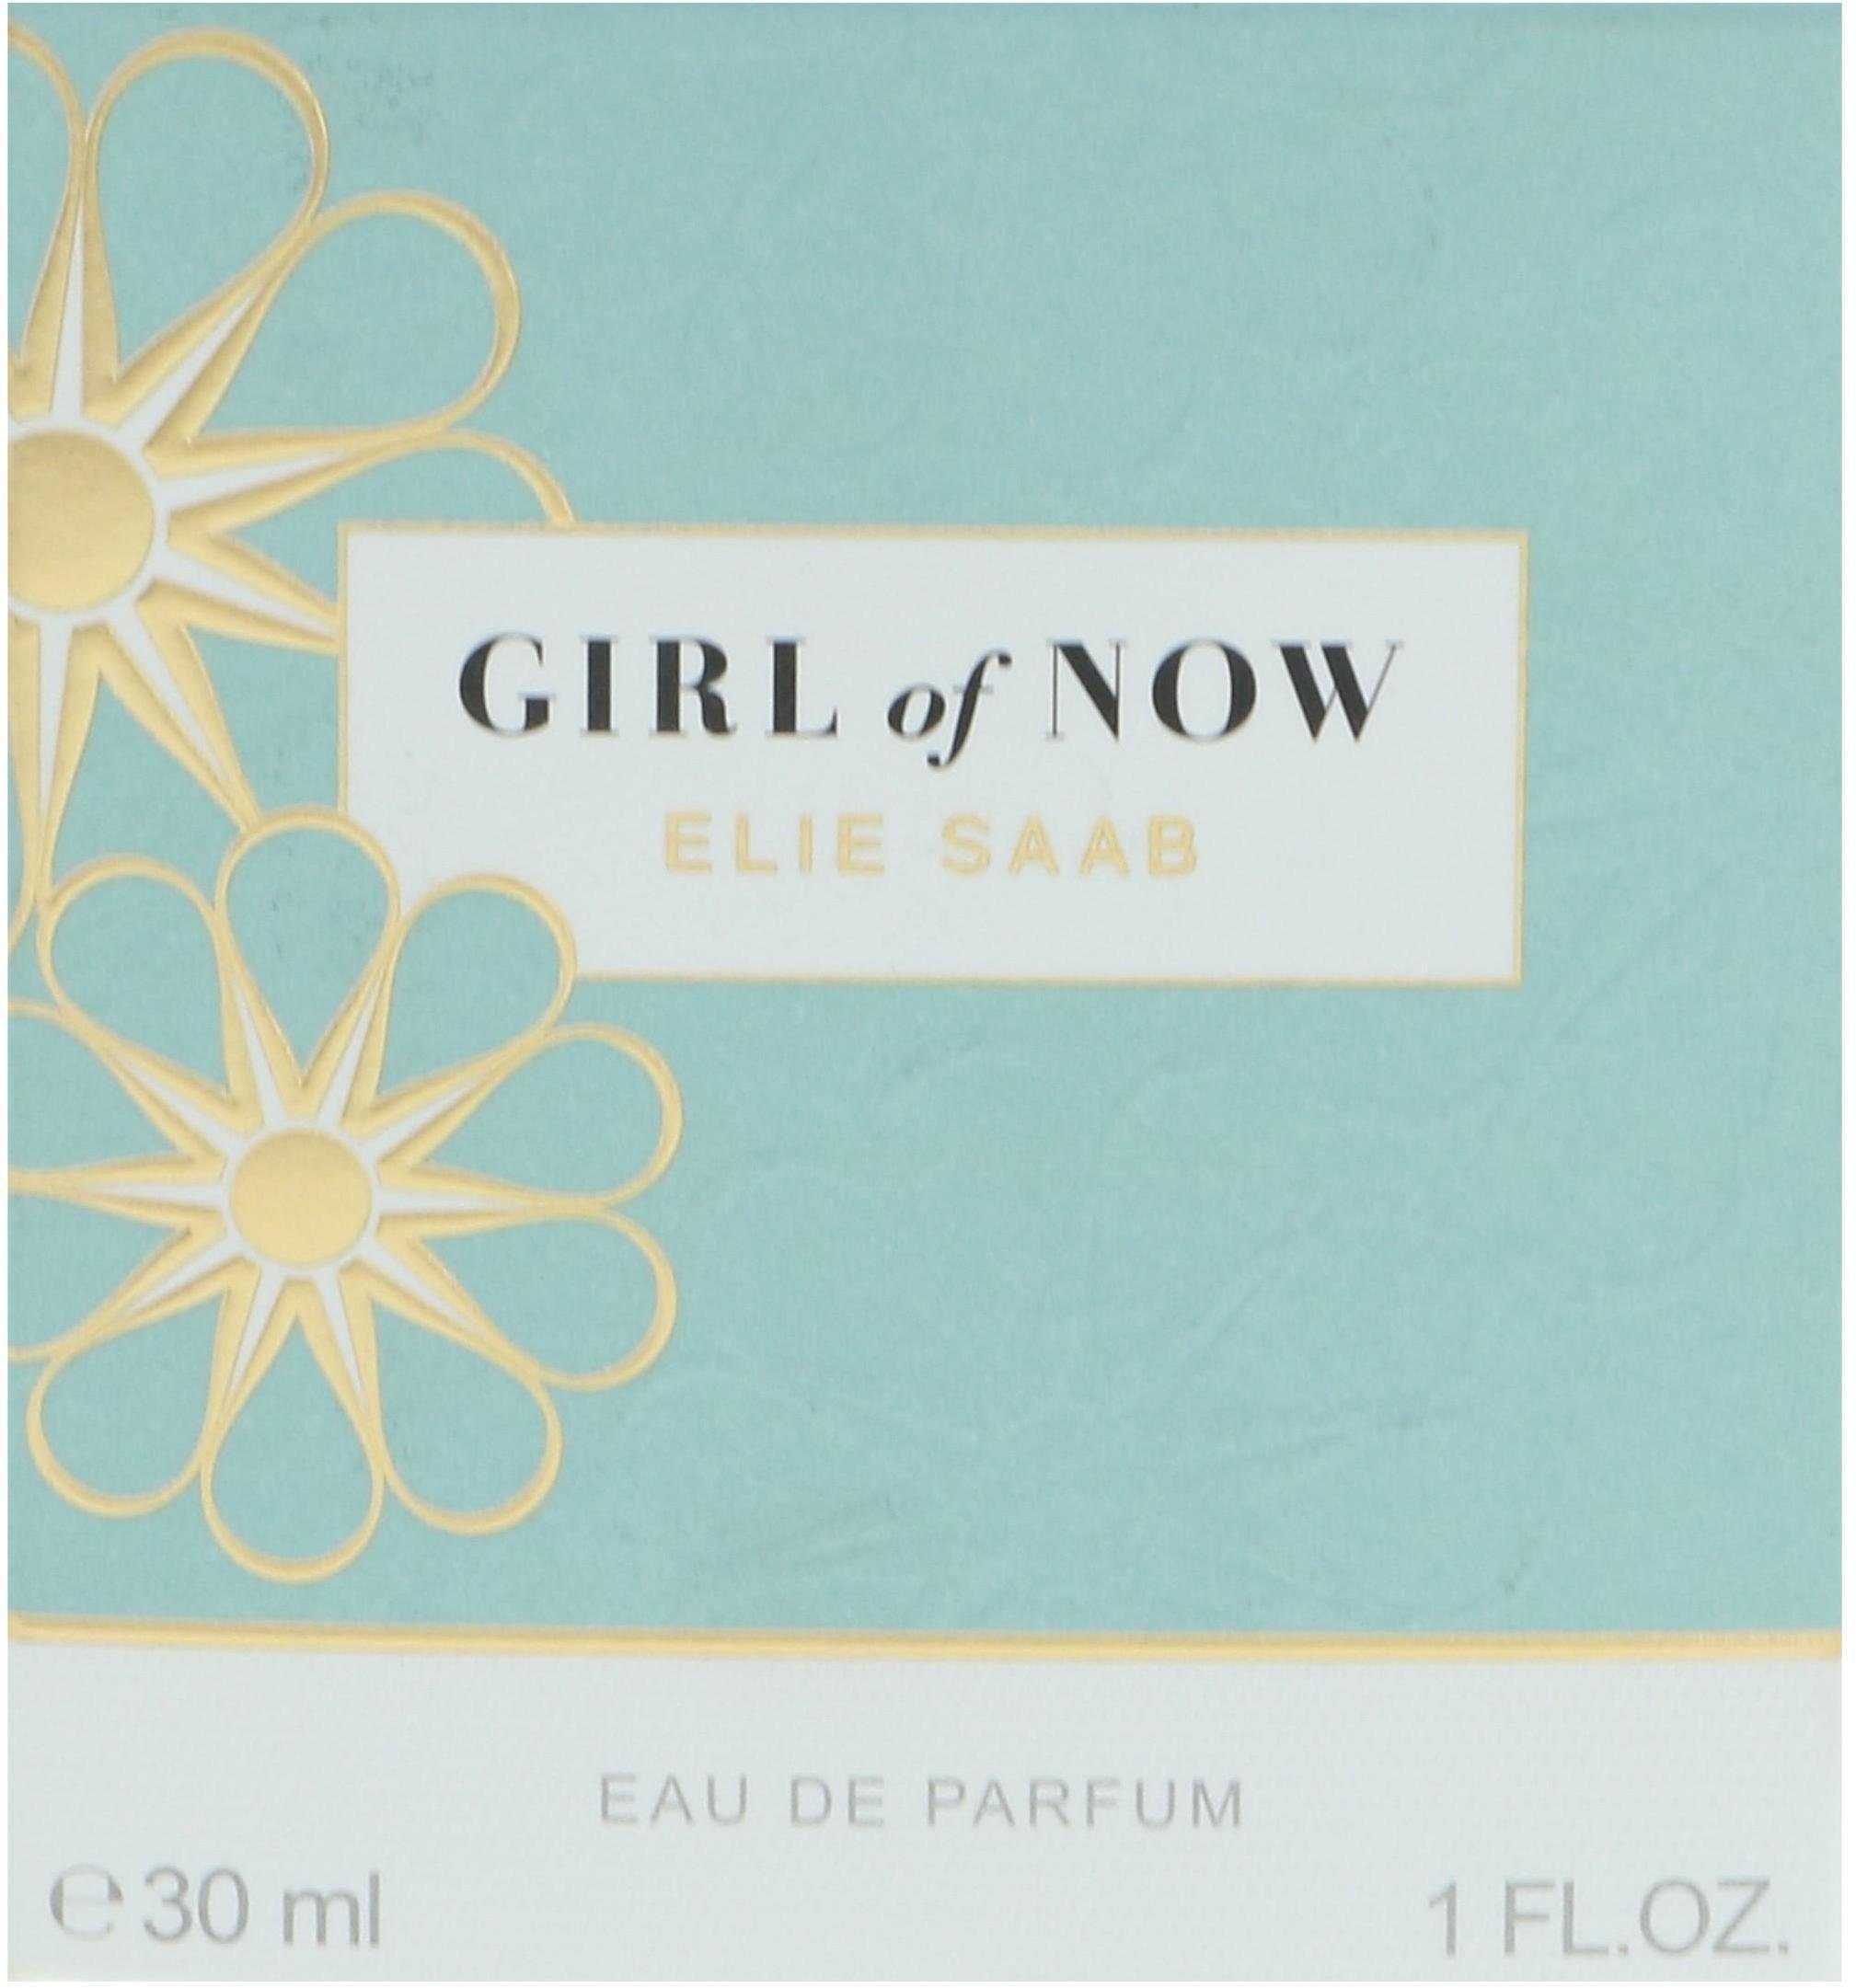 Girl Elie of ELIE SAAB Eau Parfum de Saab Now